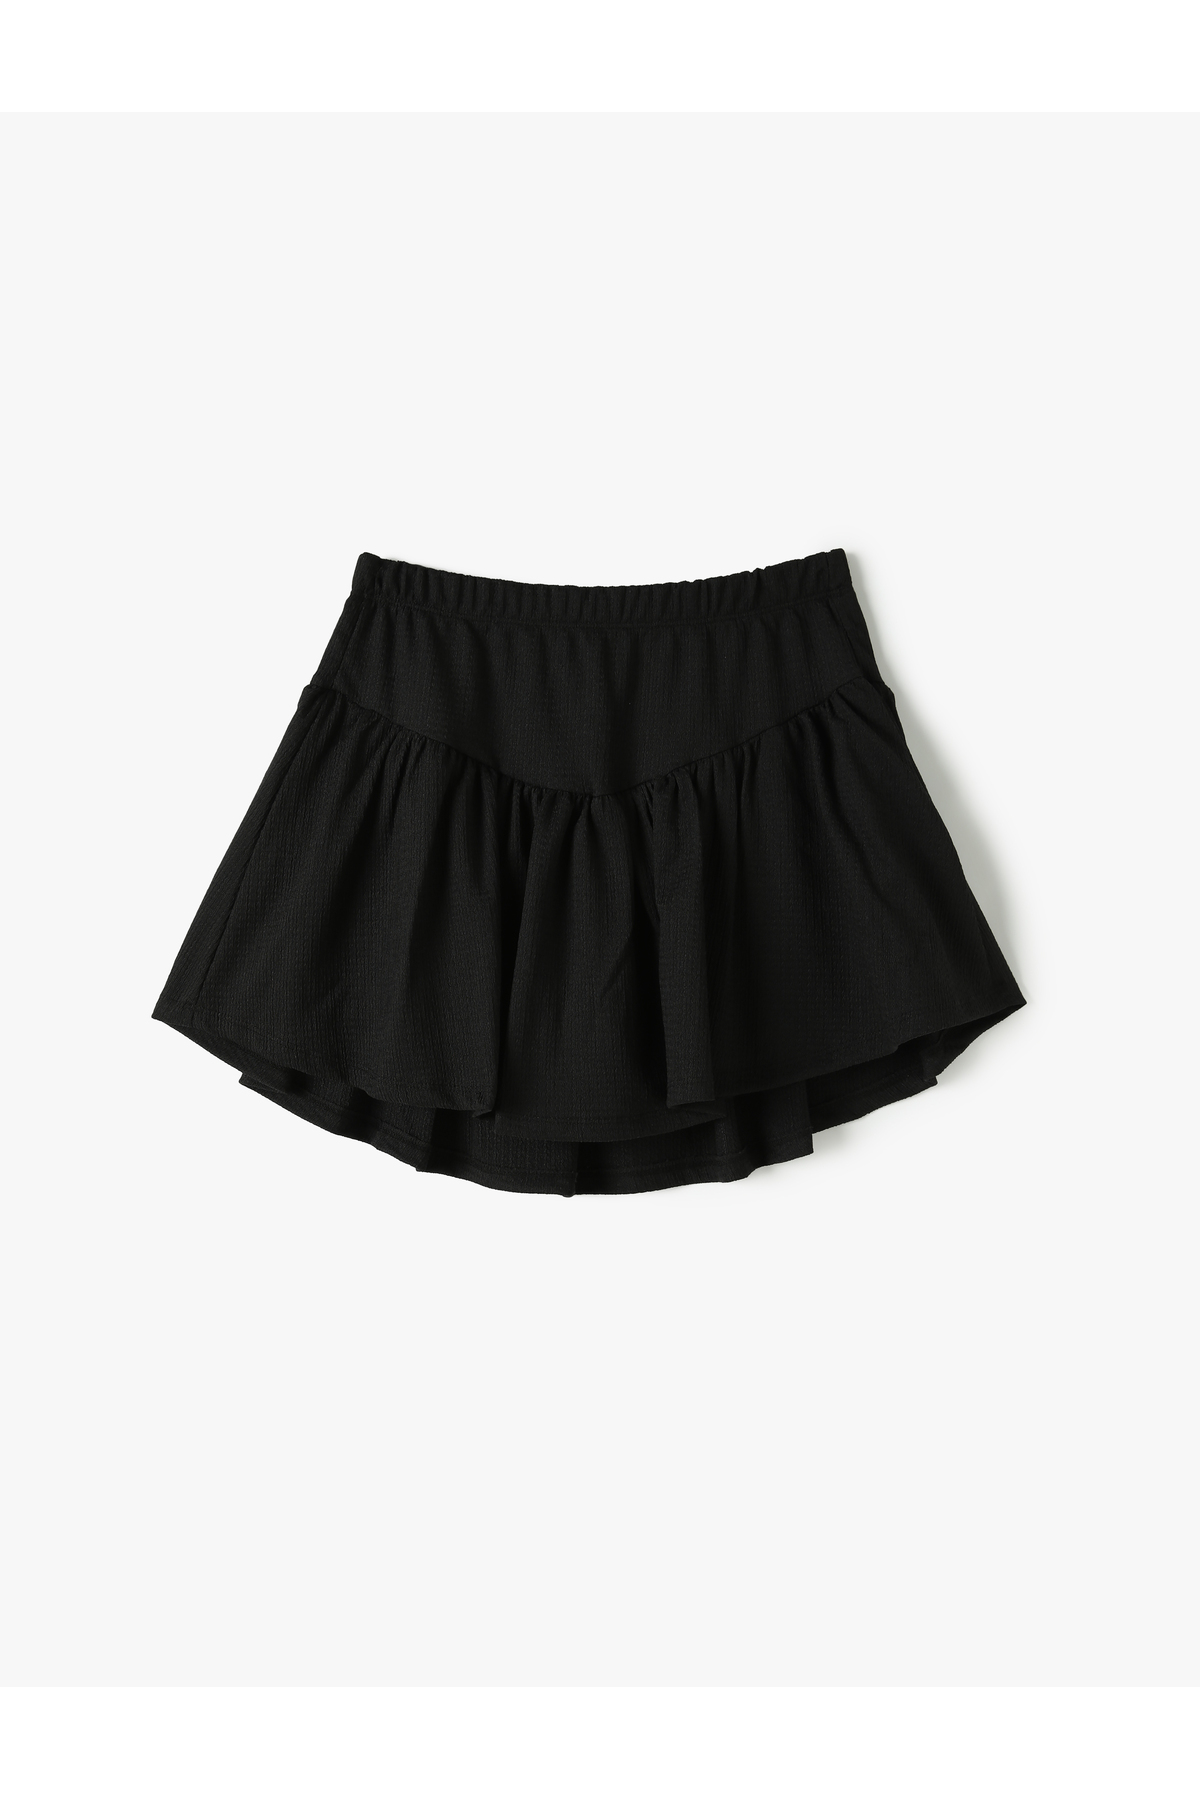 Levně Koton Shorts Skirt Textured Pleated